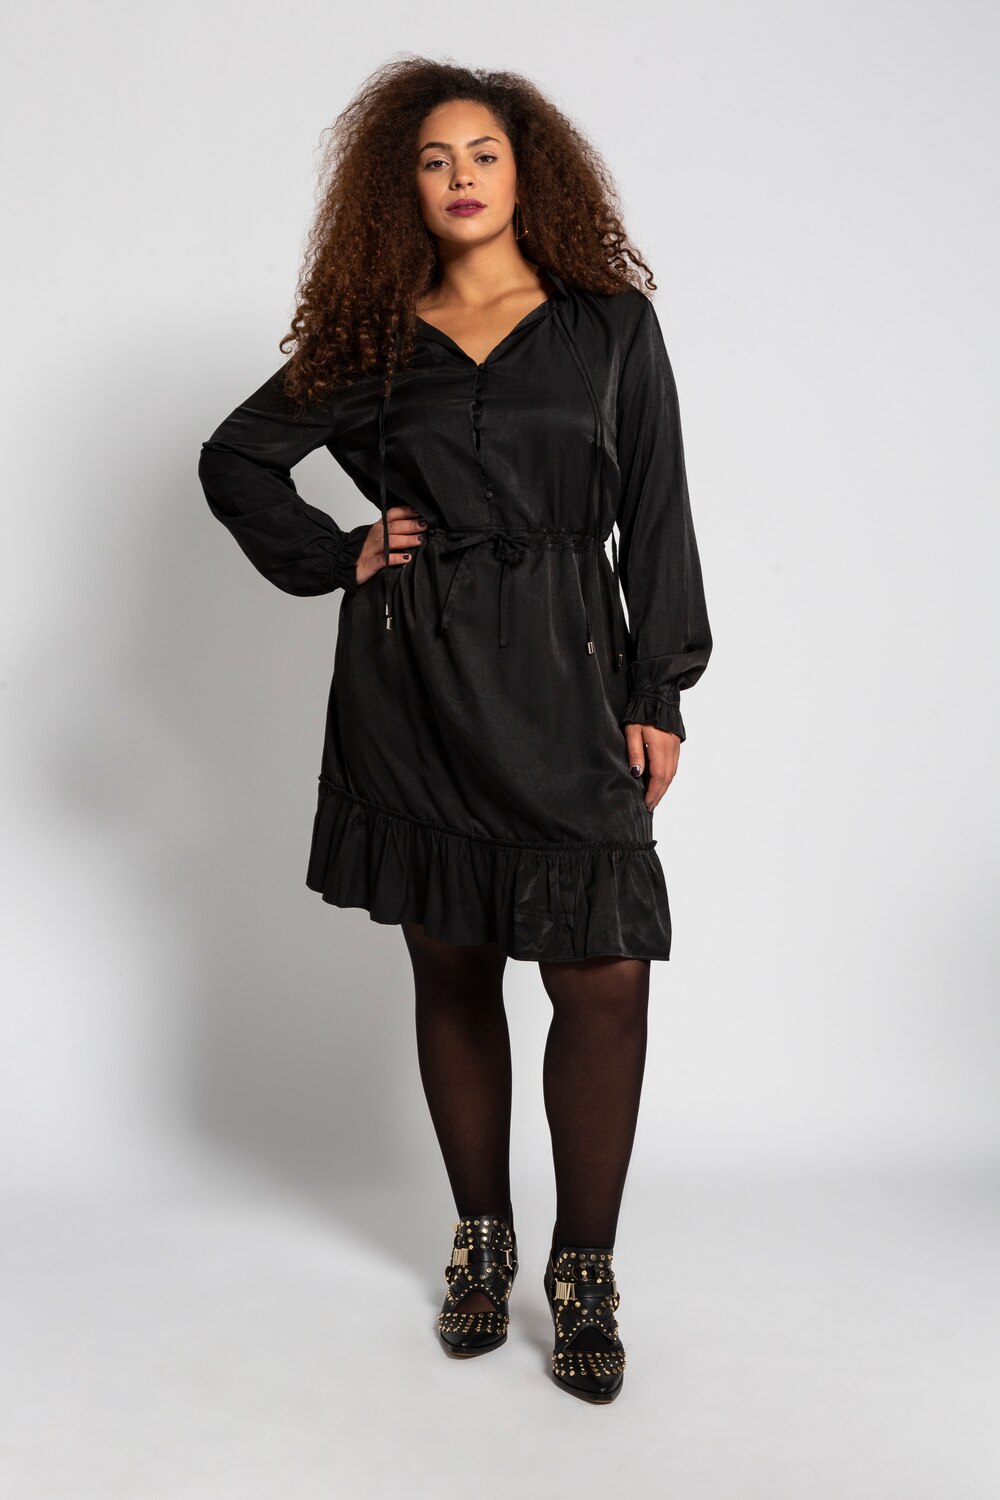 Grote Maten overgooier jurk, Dames, zwart, Maat: 50/52, Polyester/Viscose, Studio Untold